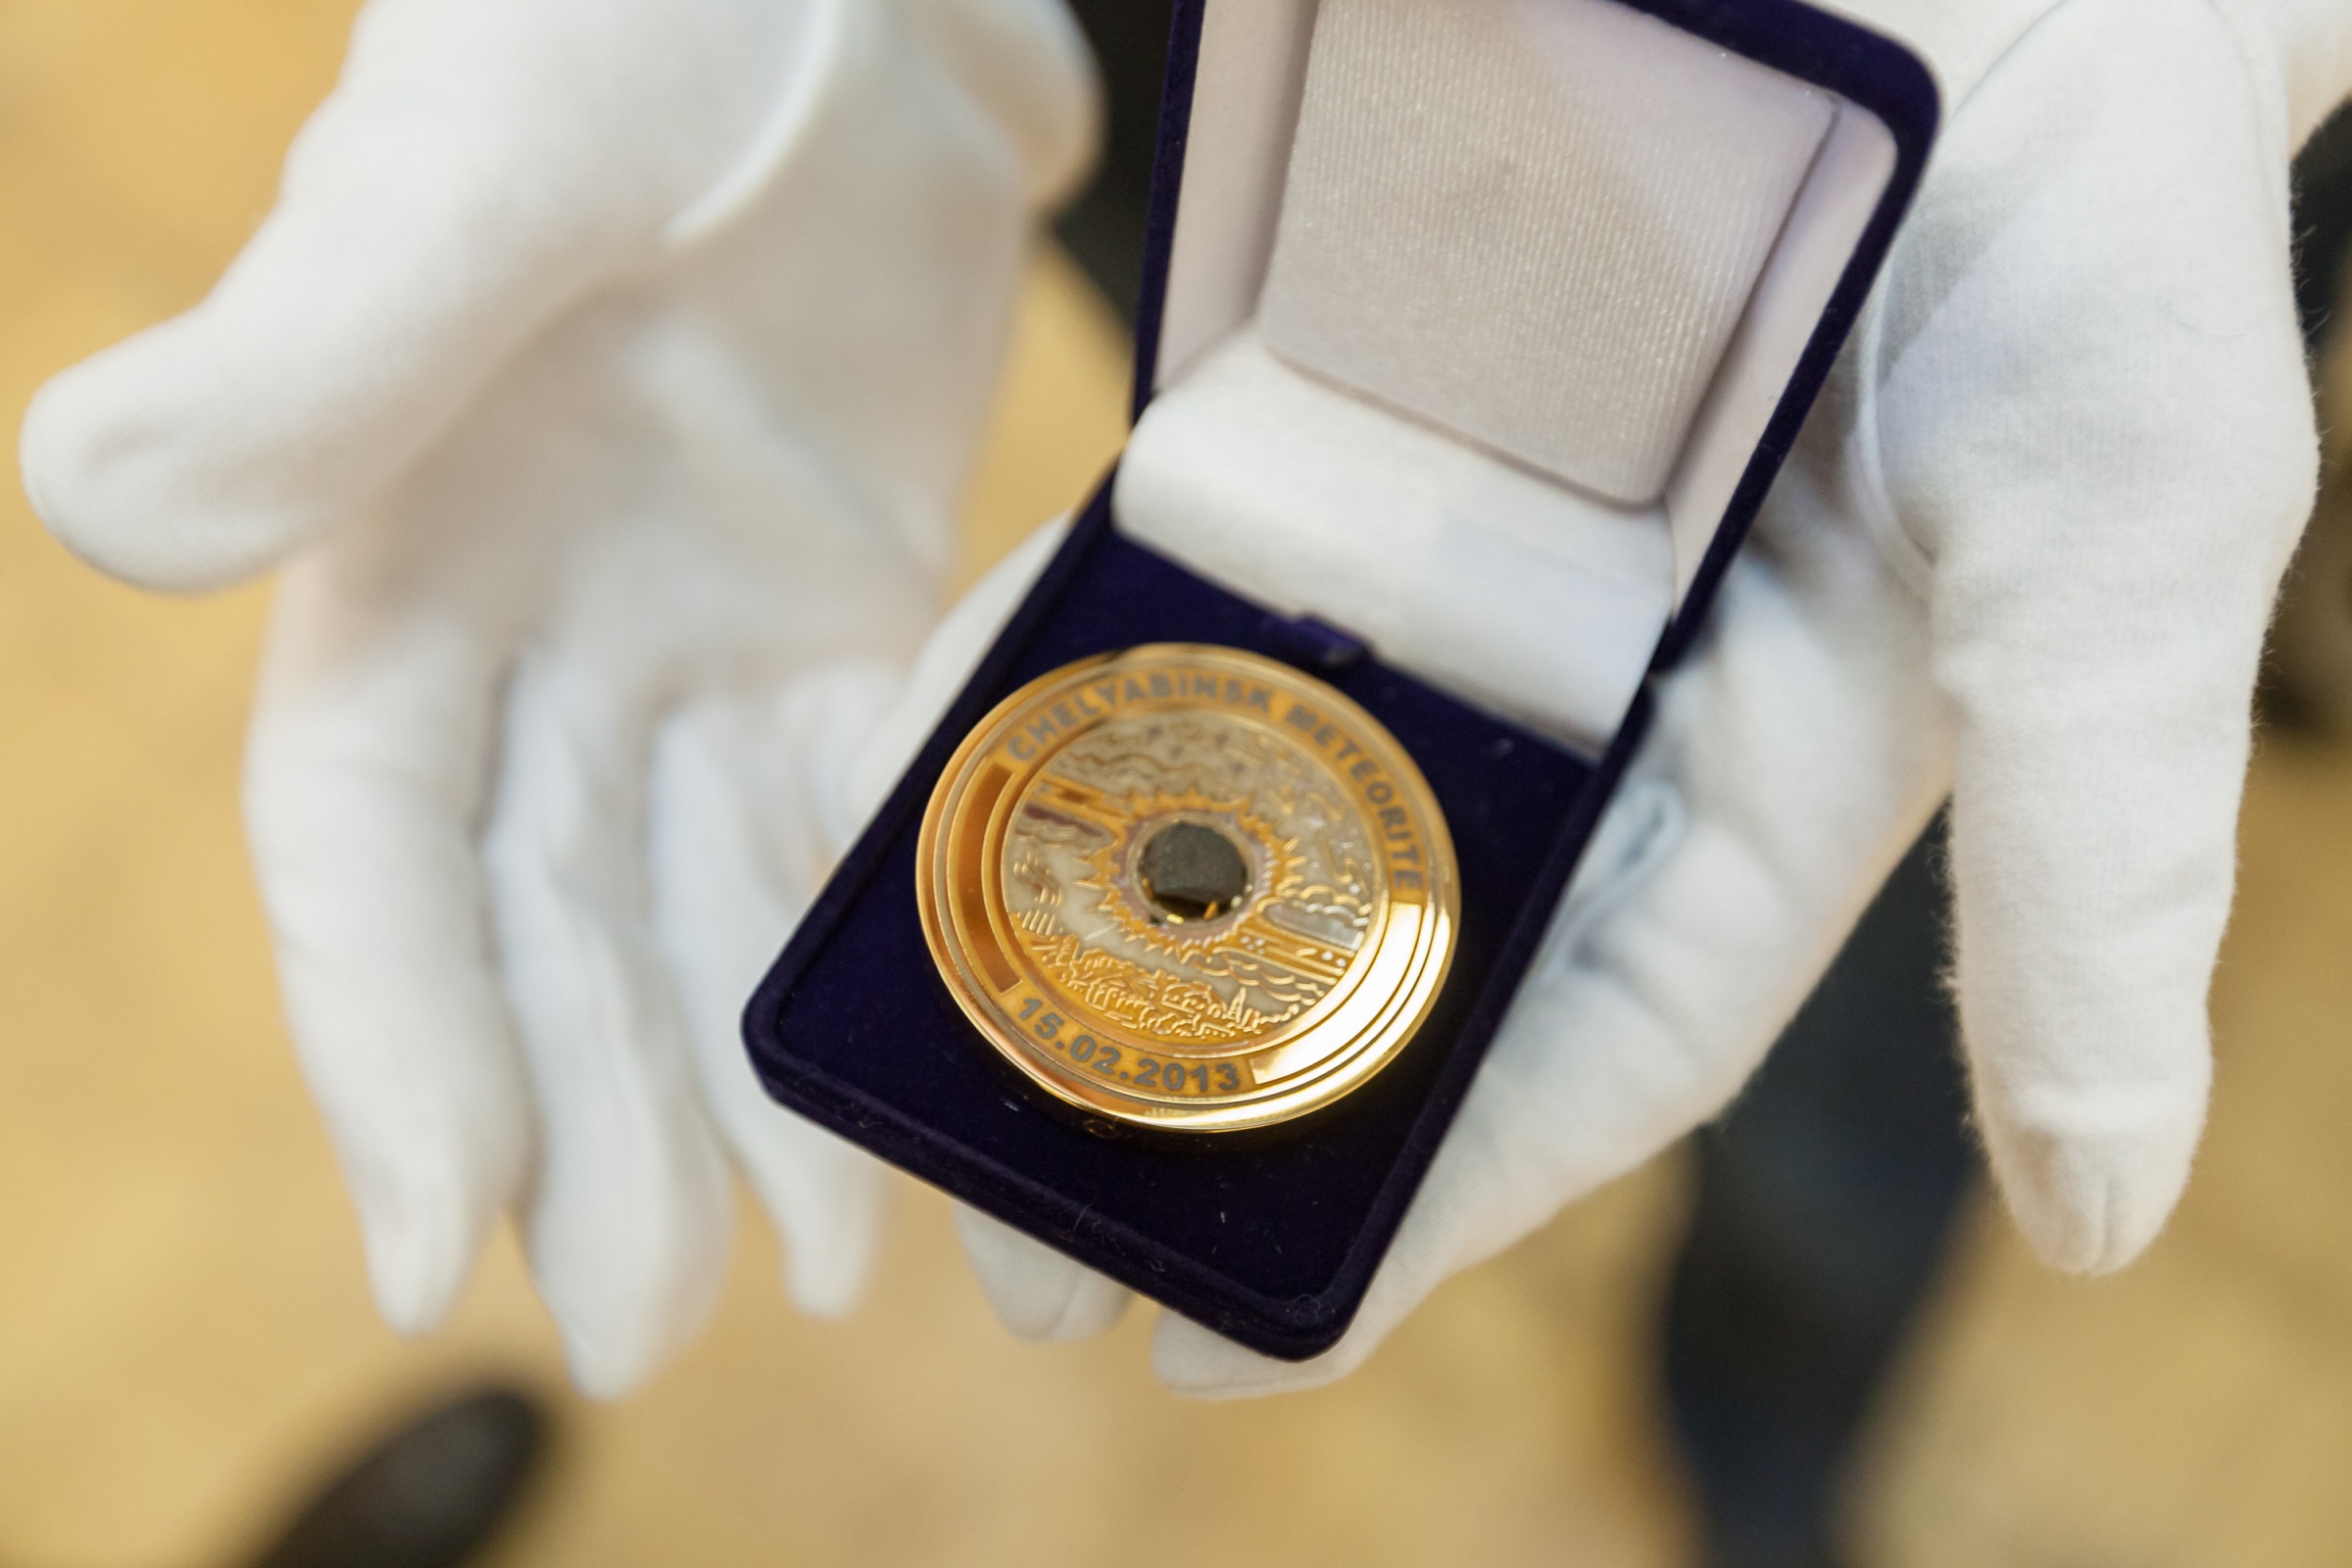 Памятна медаль с фрагментом метеорита. Комплект из 10 таких медалей был вручен победителям XII зимних Олимпийских игр в Сочи 15 февряля 2014 года - в годовщину падения метеорита